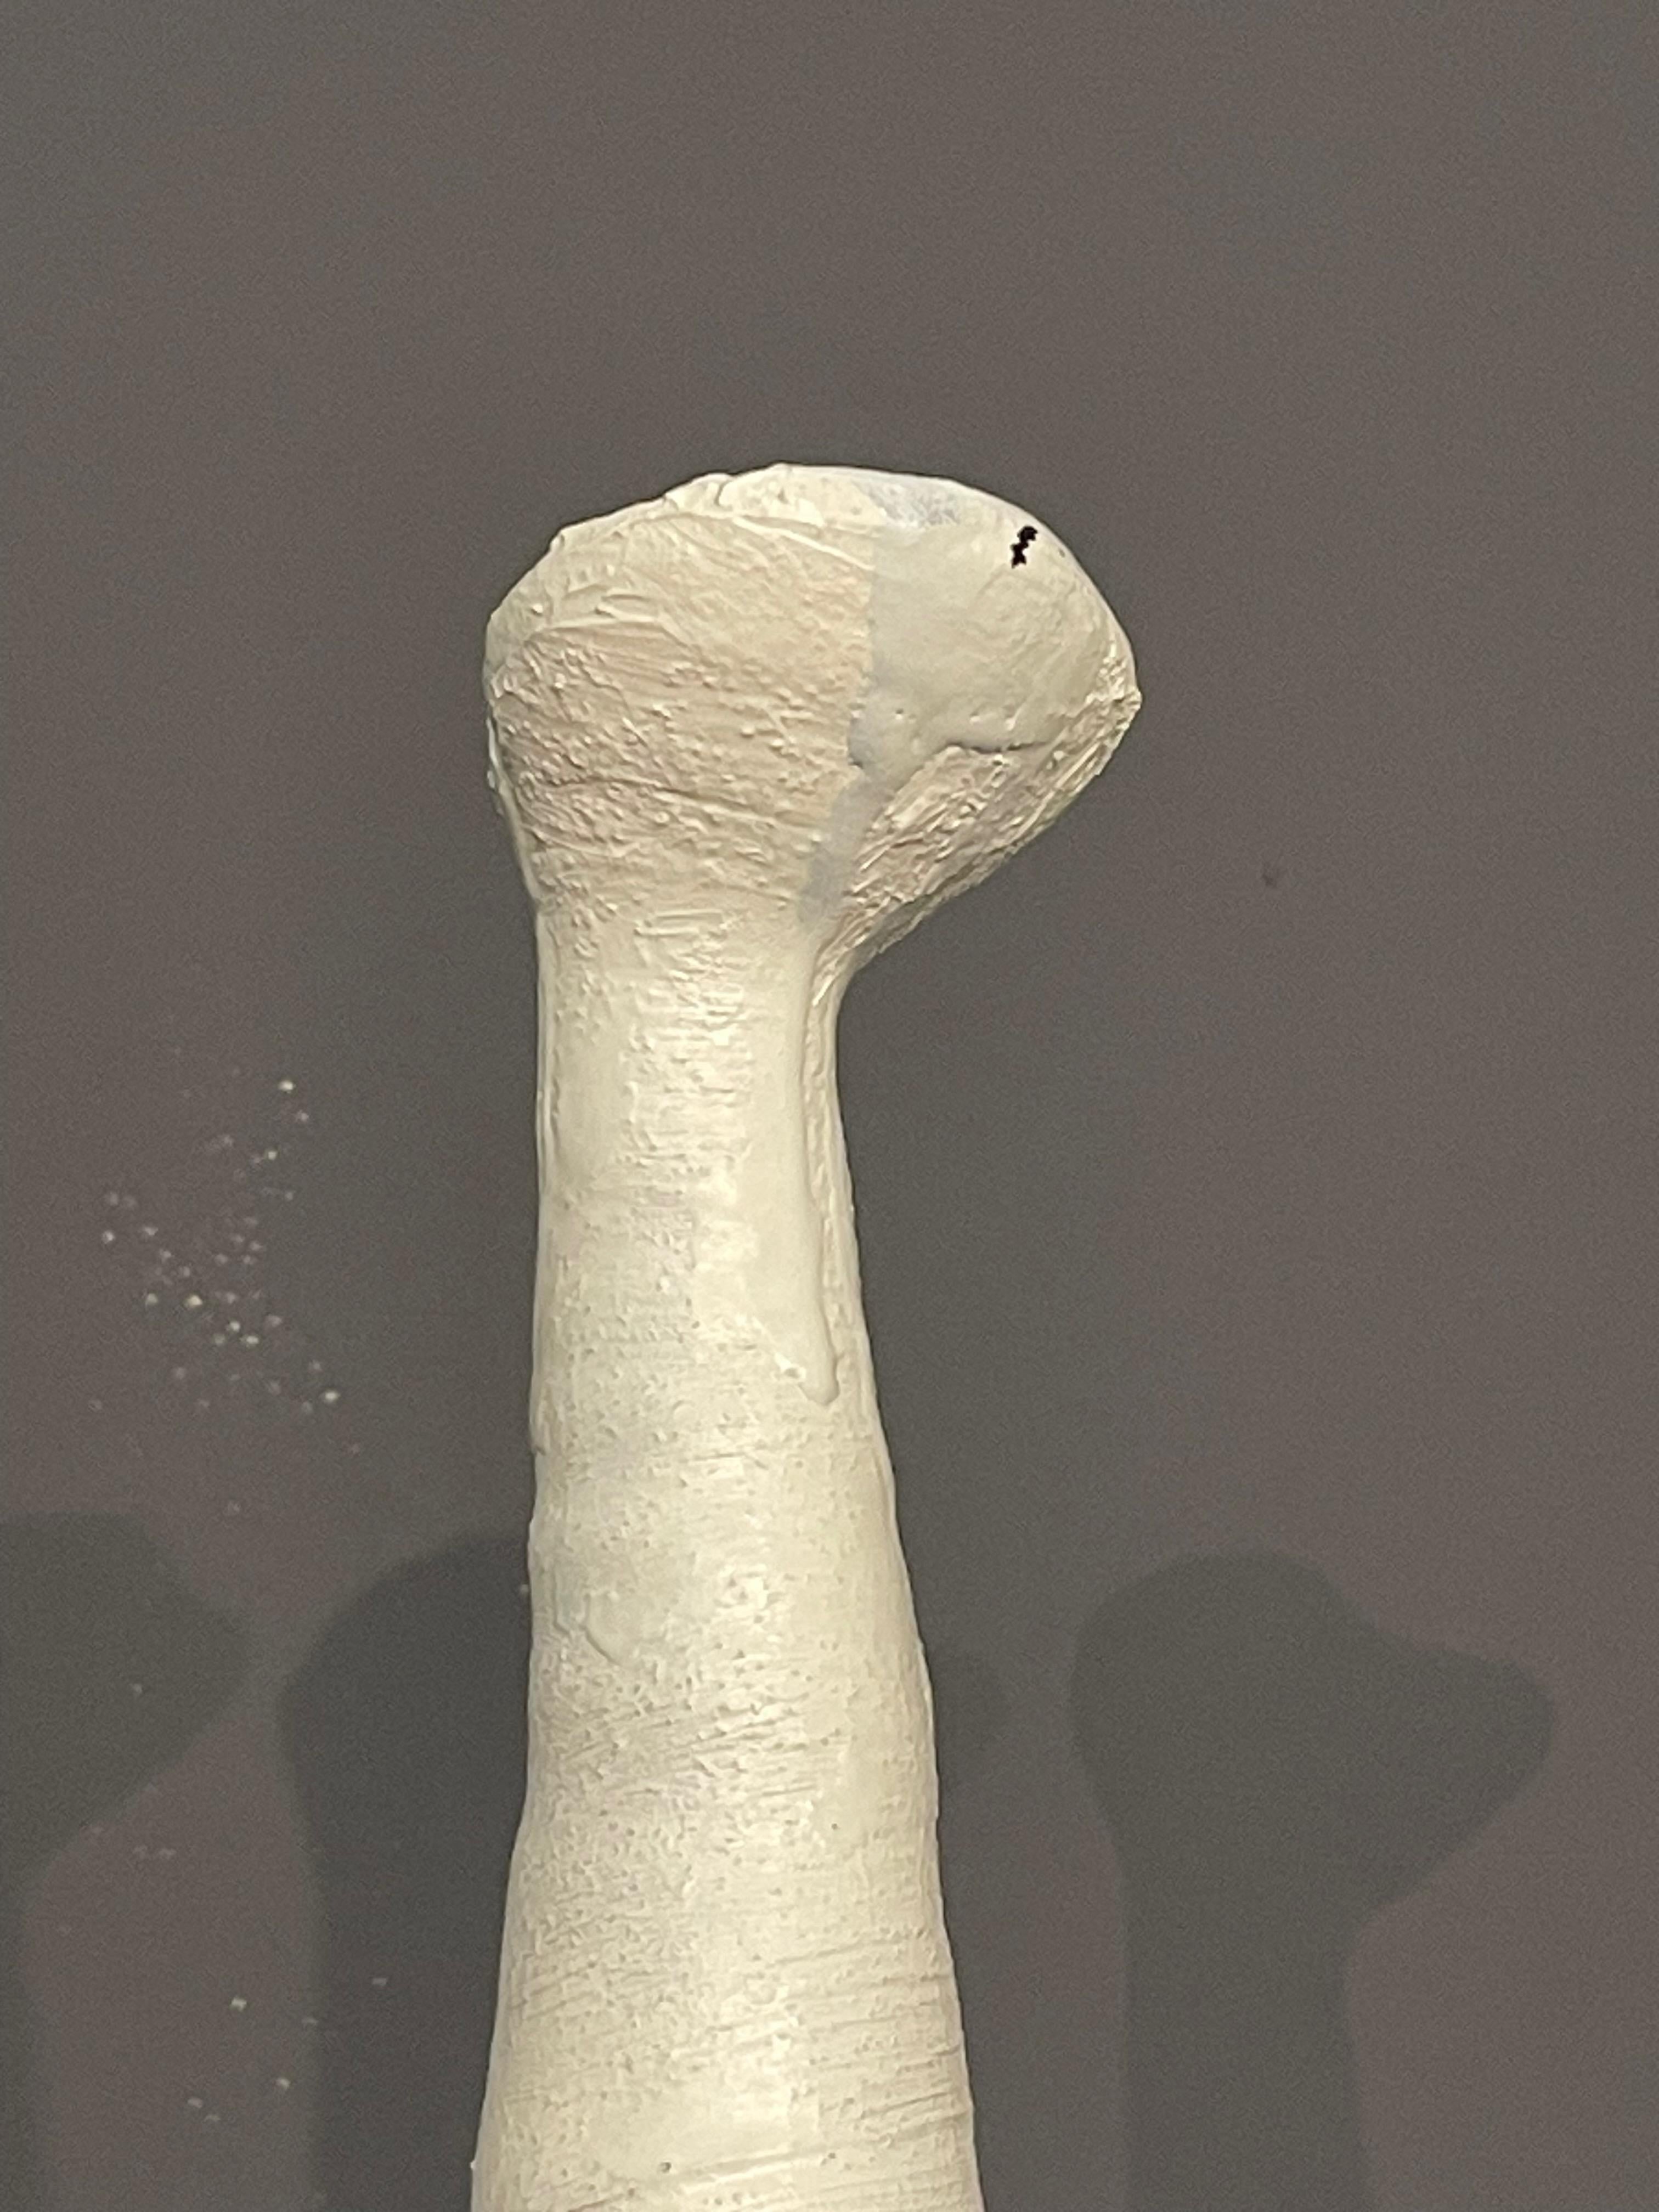 Zeitgenössische, handgefertigte italienische Vase mit brutalistischem Design.
Hoher Hals mit kleiner Tülle.
Horizontaler strukturierter Sockel.
Teil einer Sammlung von drei Stücken.
